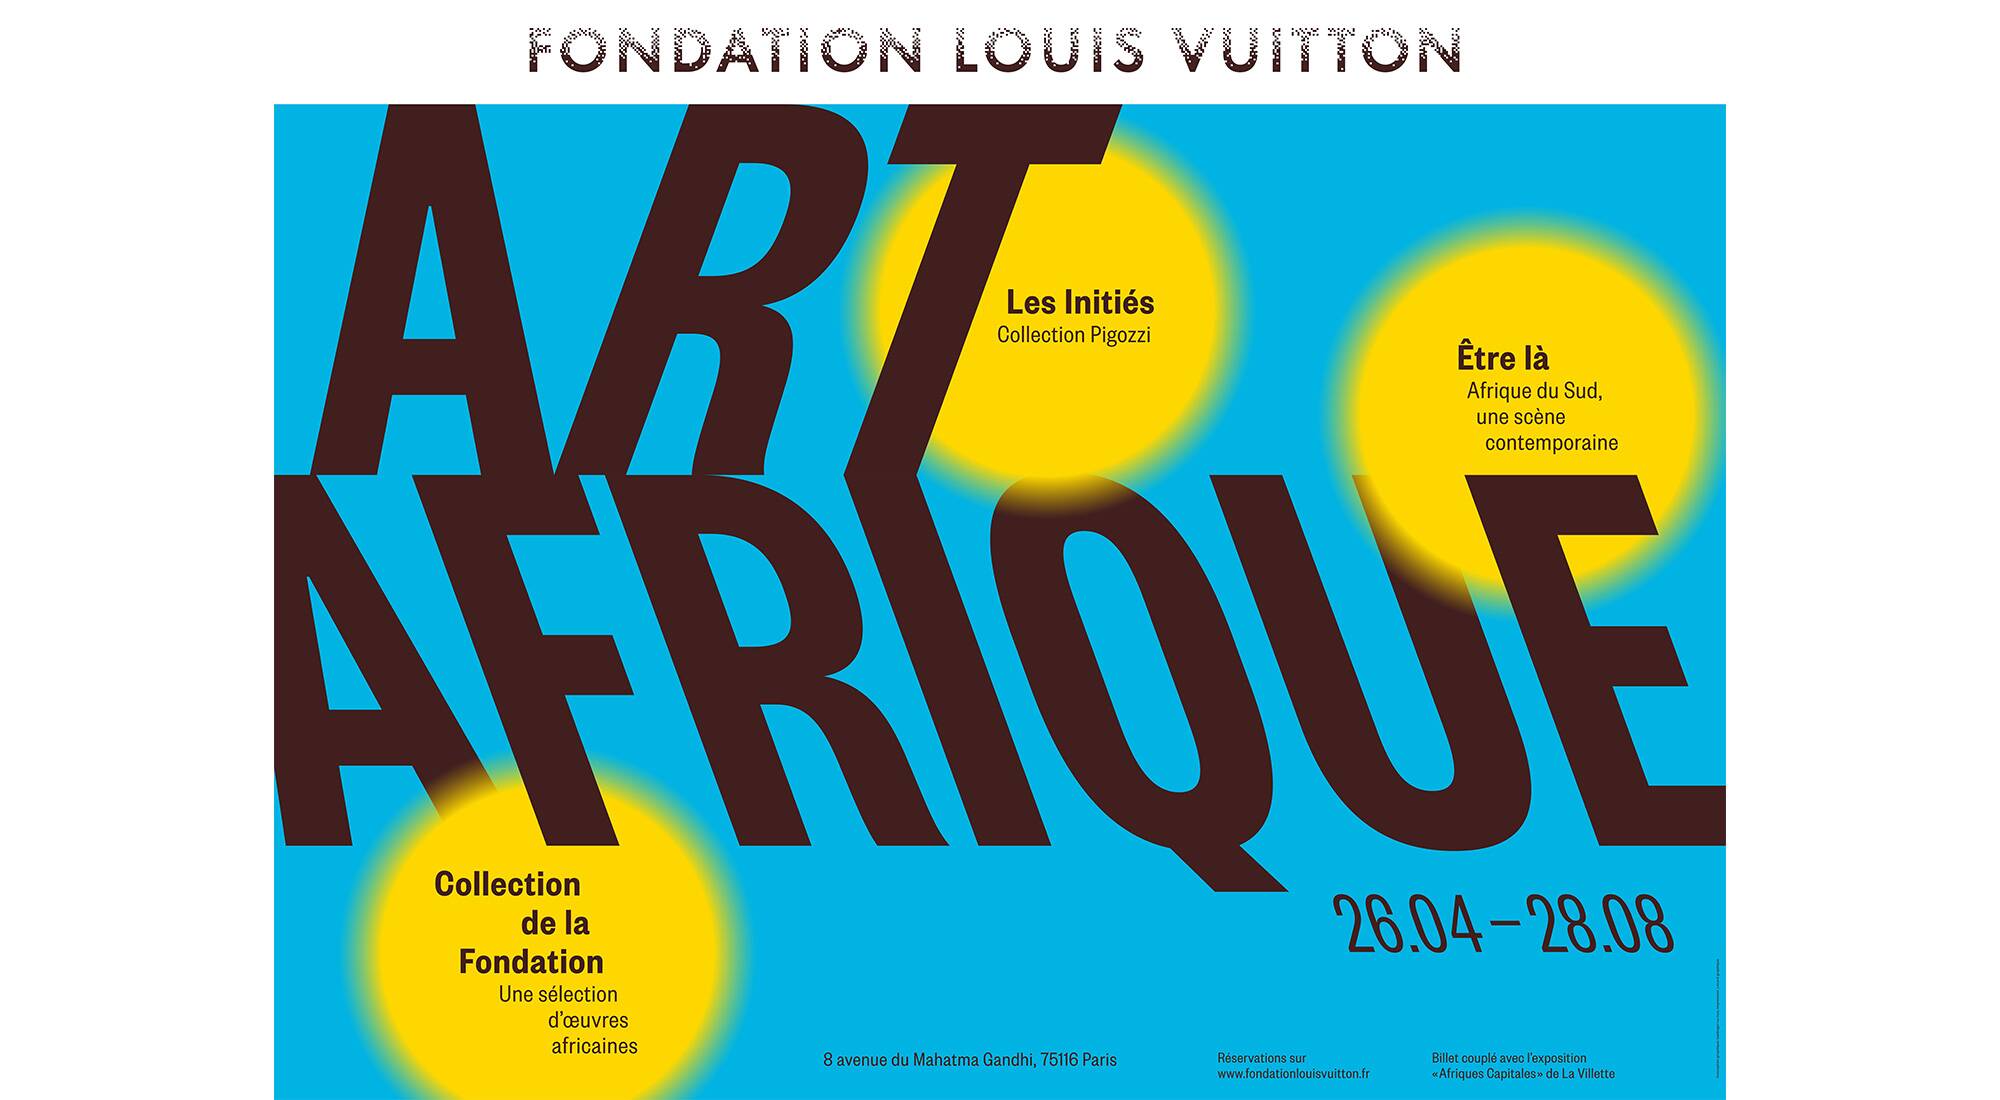 Fondation Louis Vuitton's Art/Arfrique